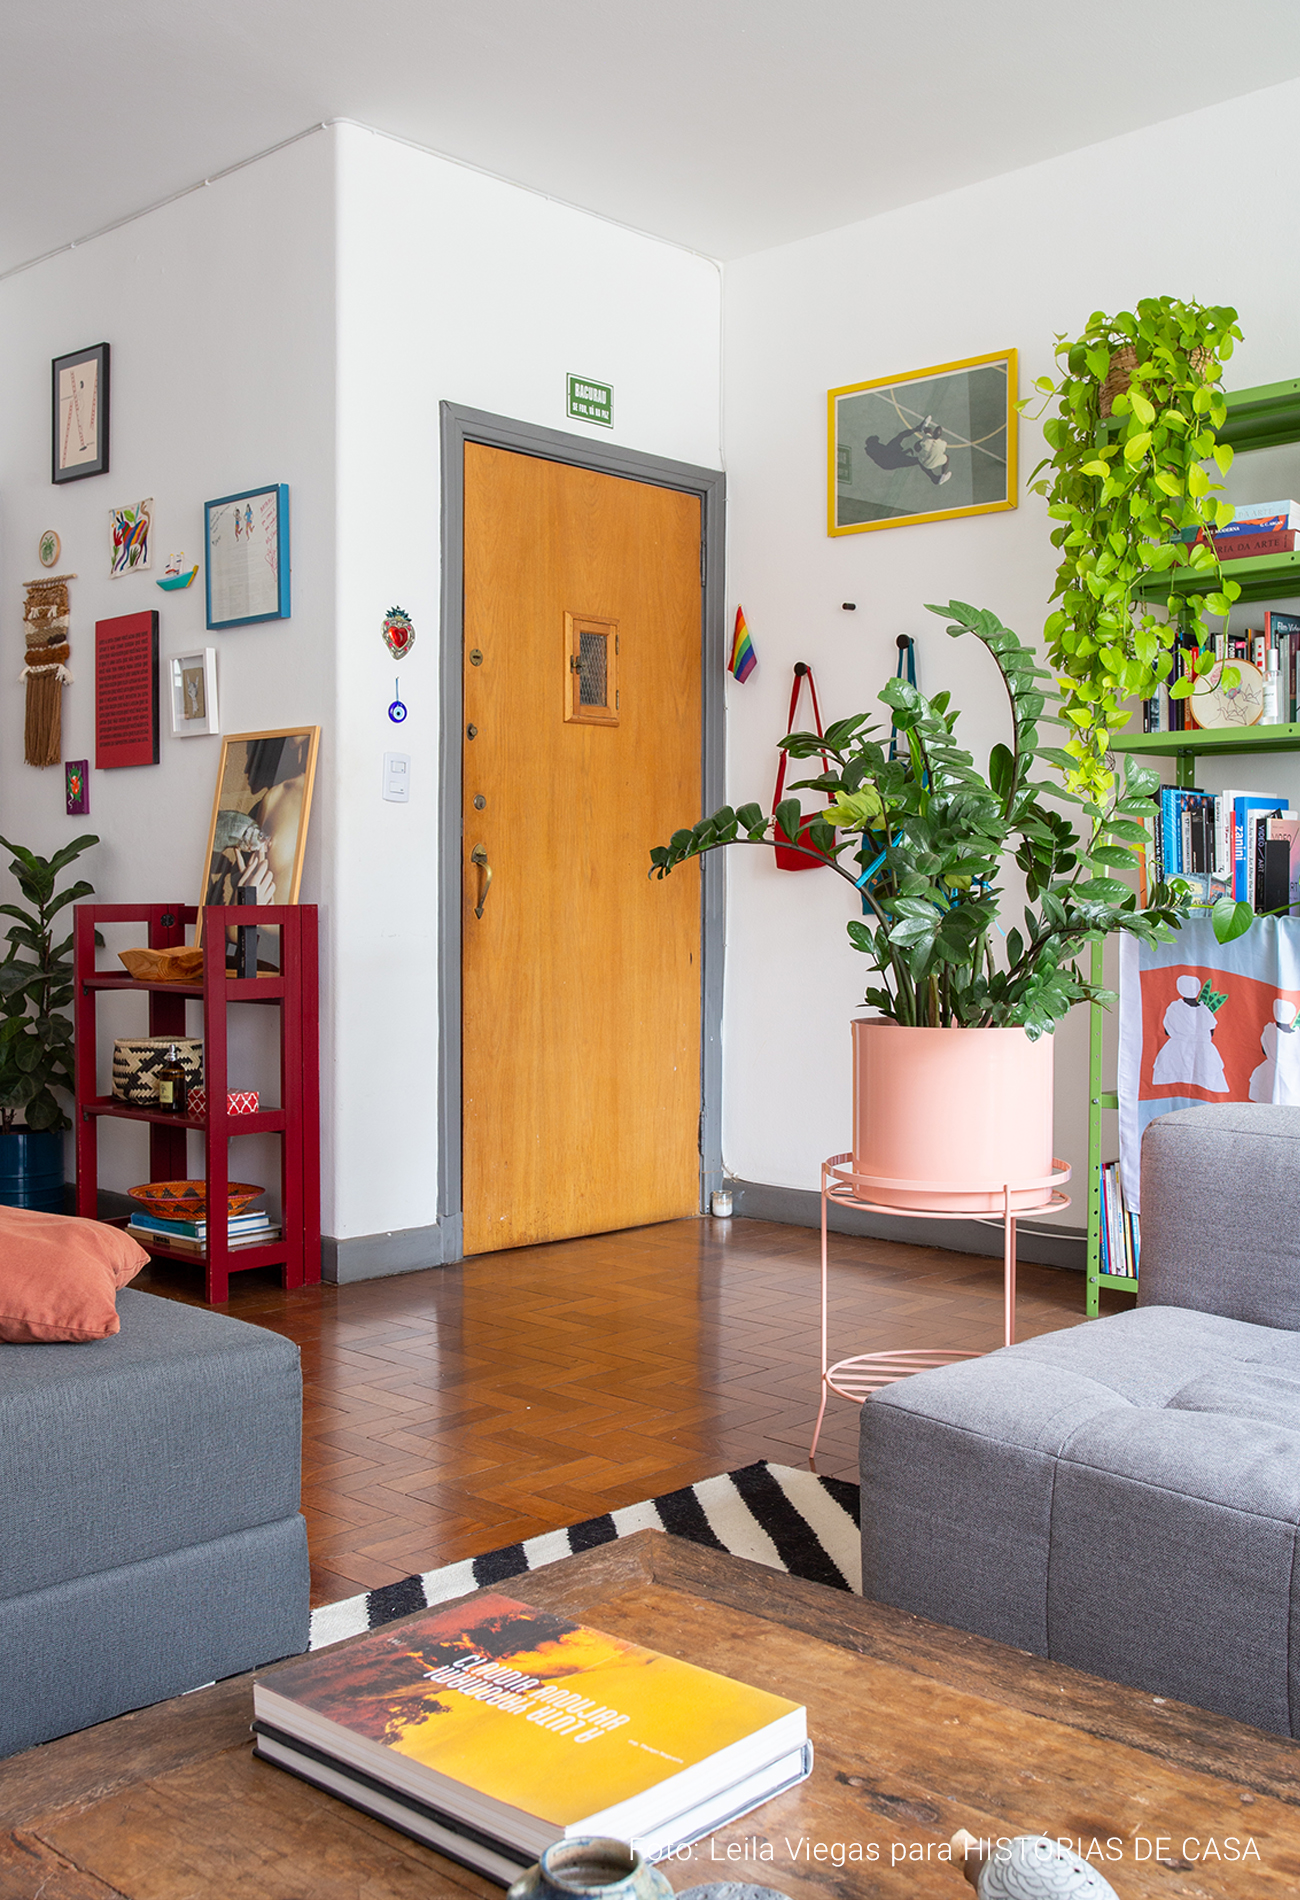 Apartamento alugado e colorido com boas ideias